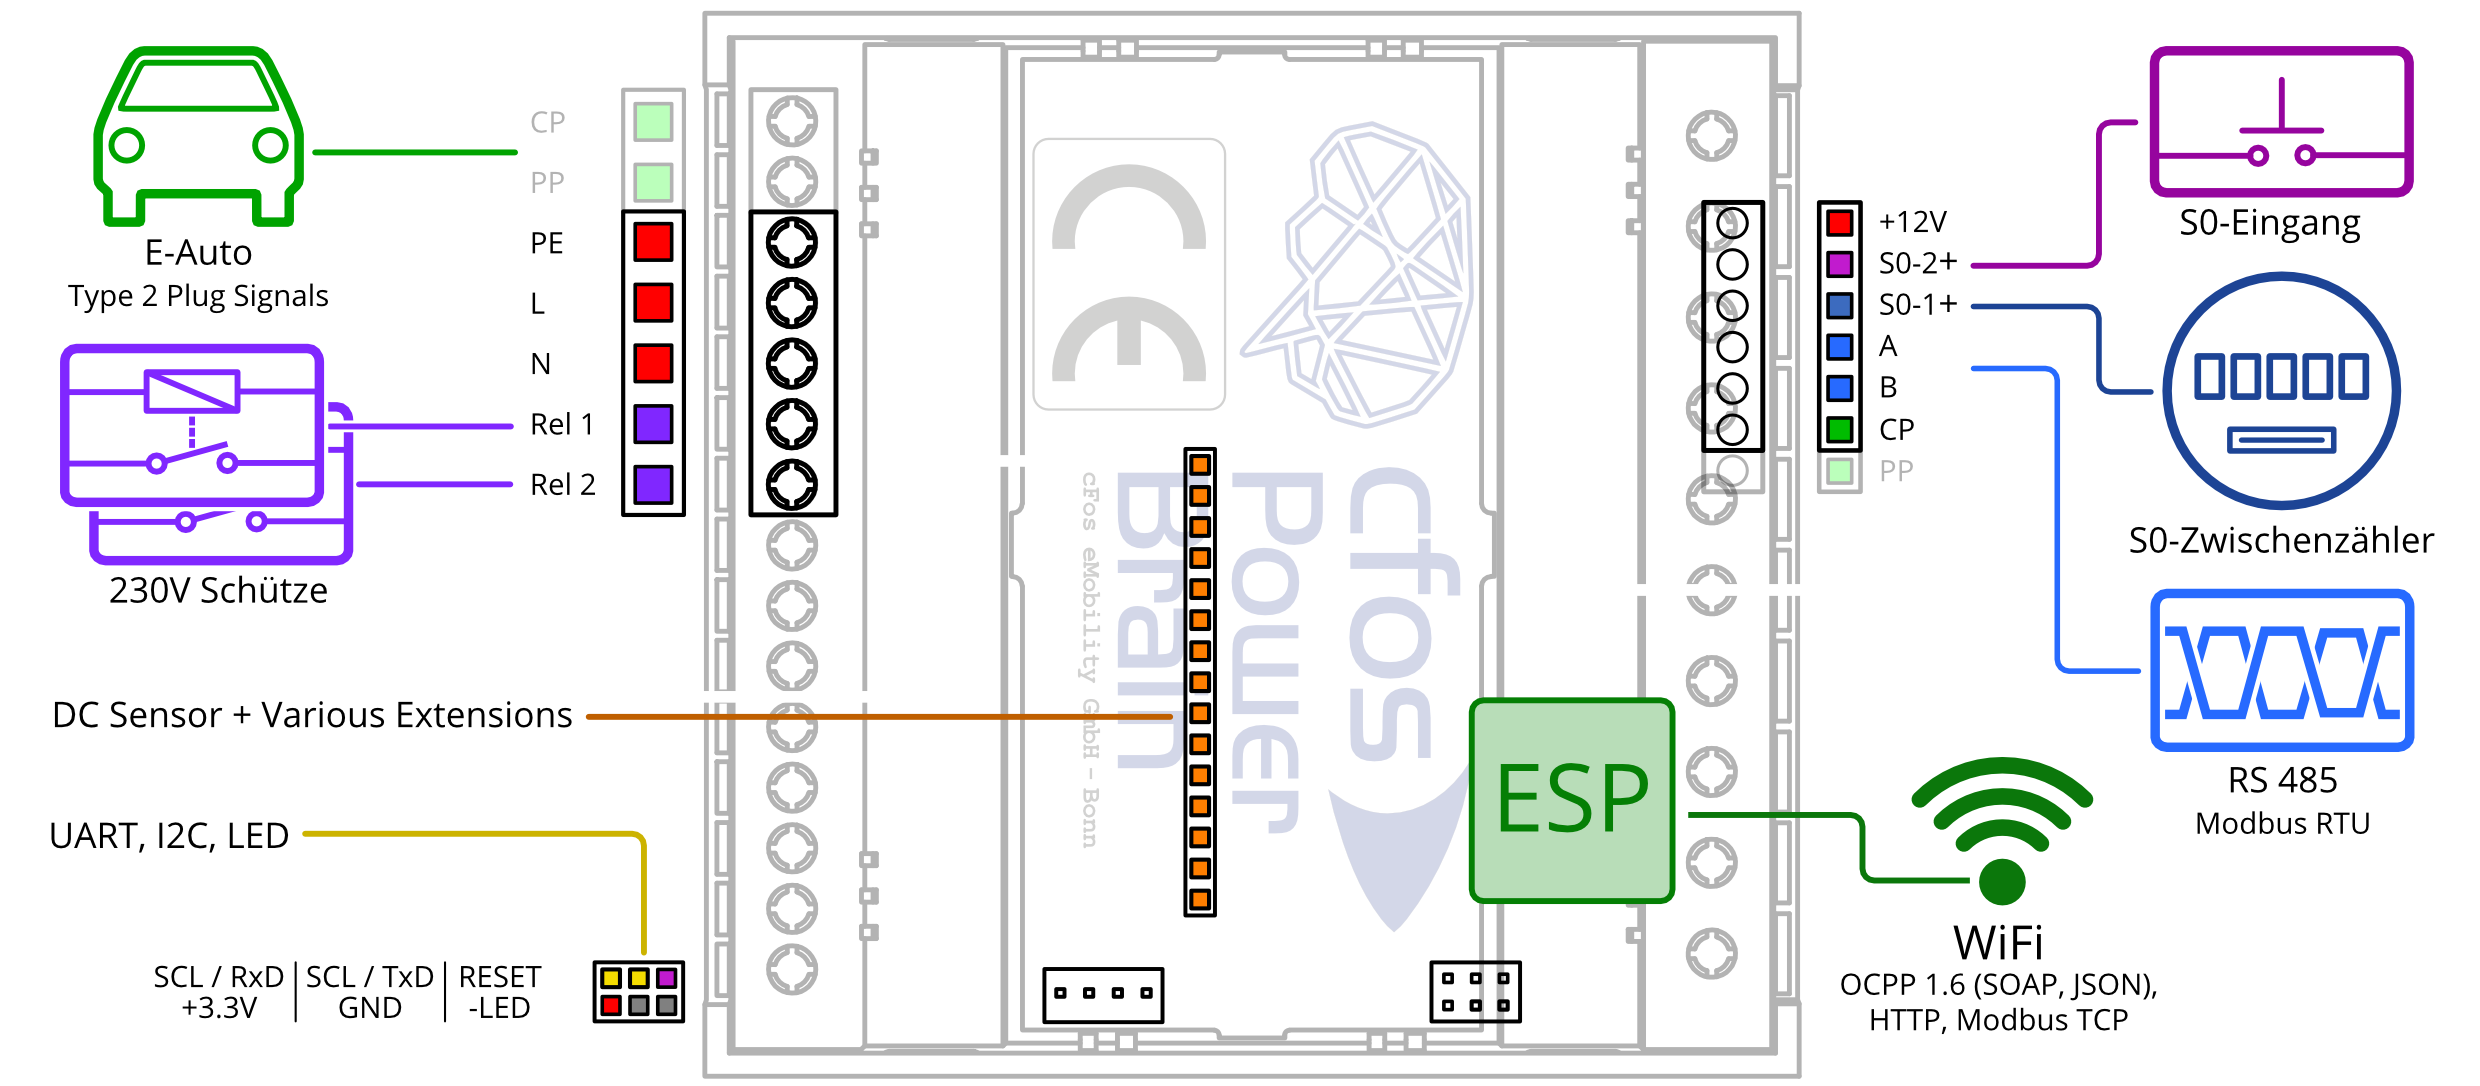 CFos Şarj Kontrol Cihazı giriş/çıkış konektörlerinin şemaları